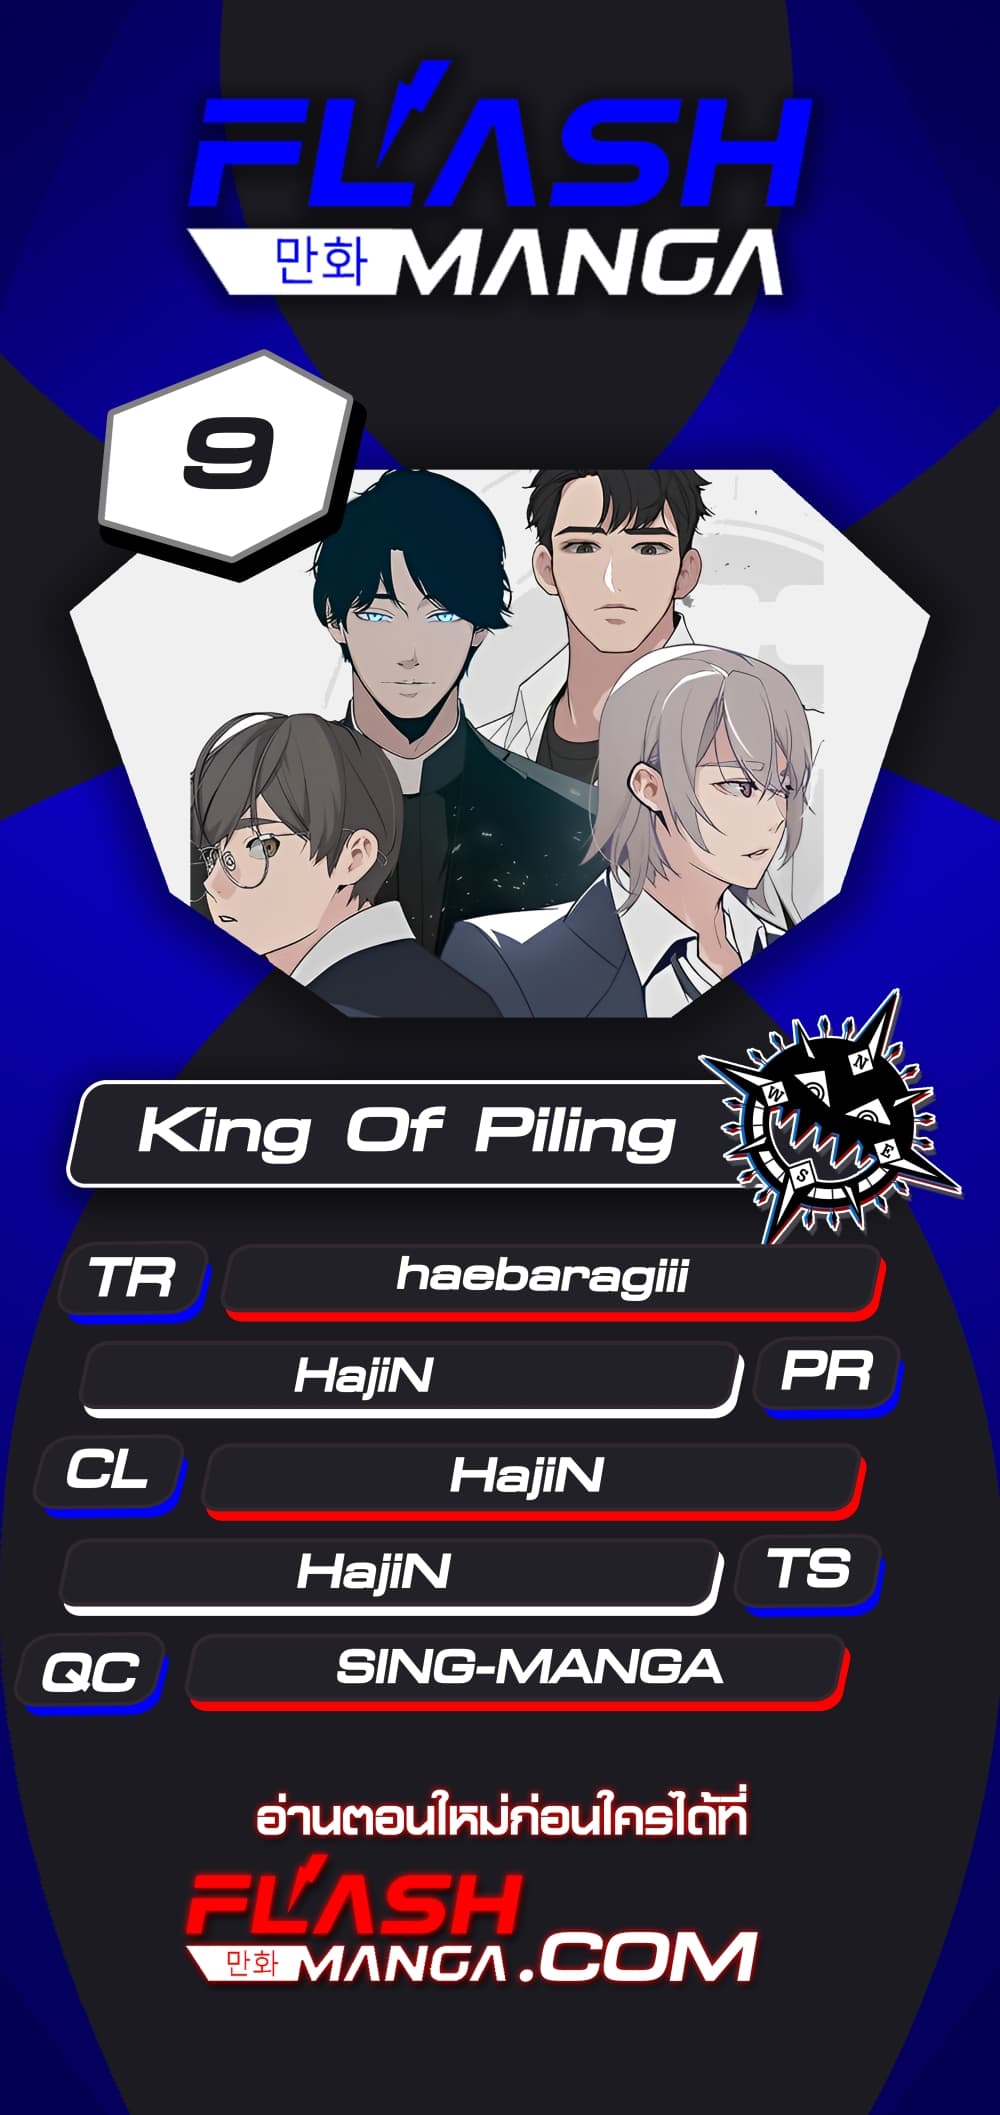 King of Piling 9-9